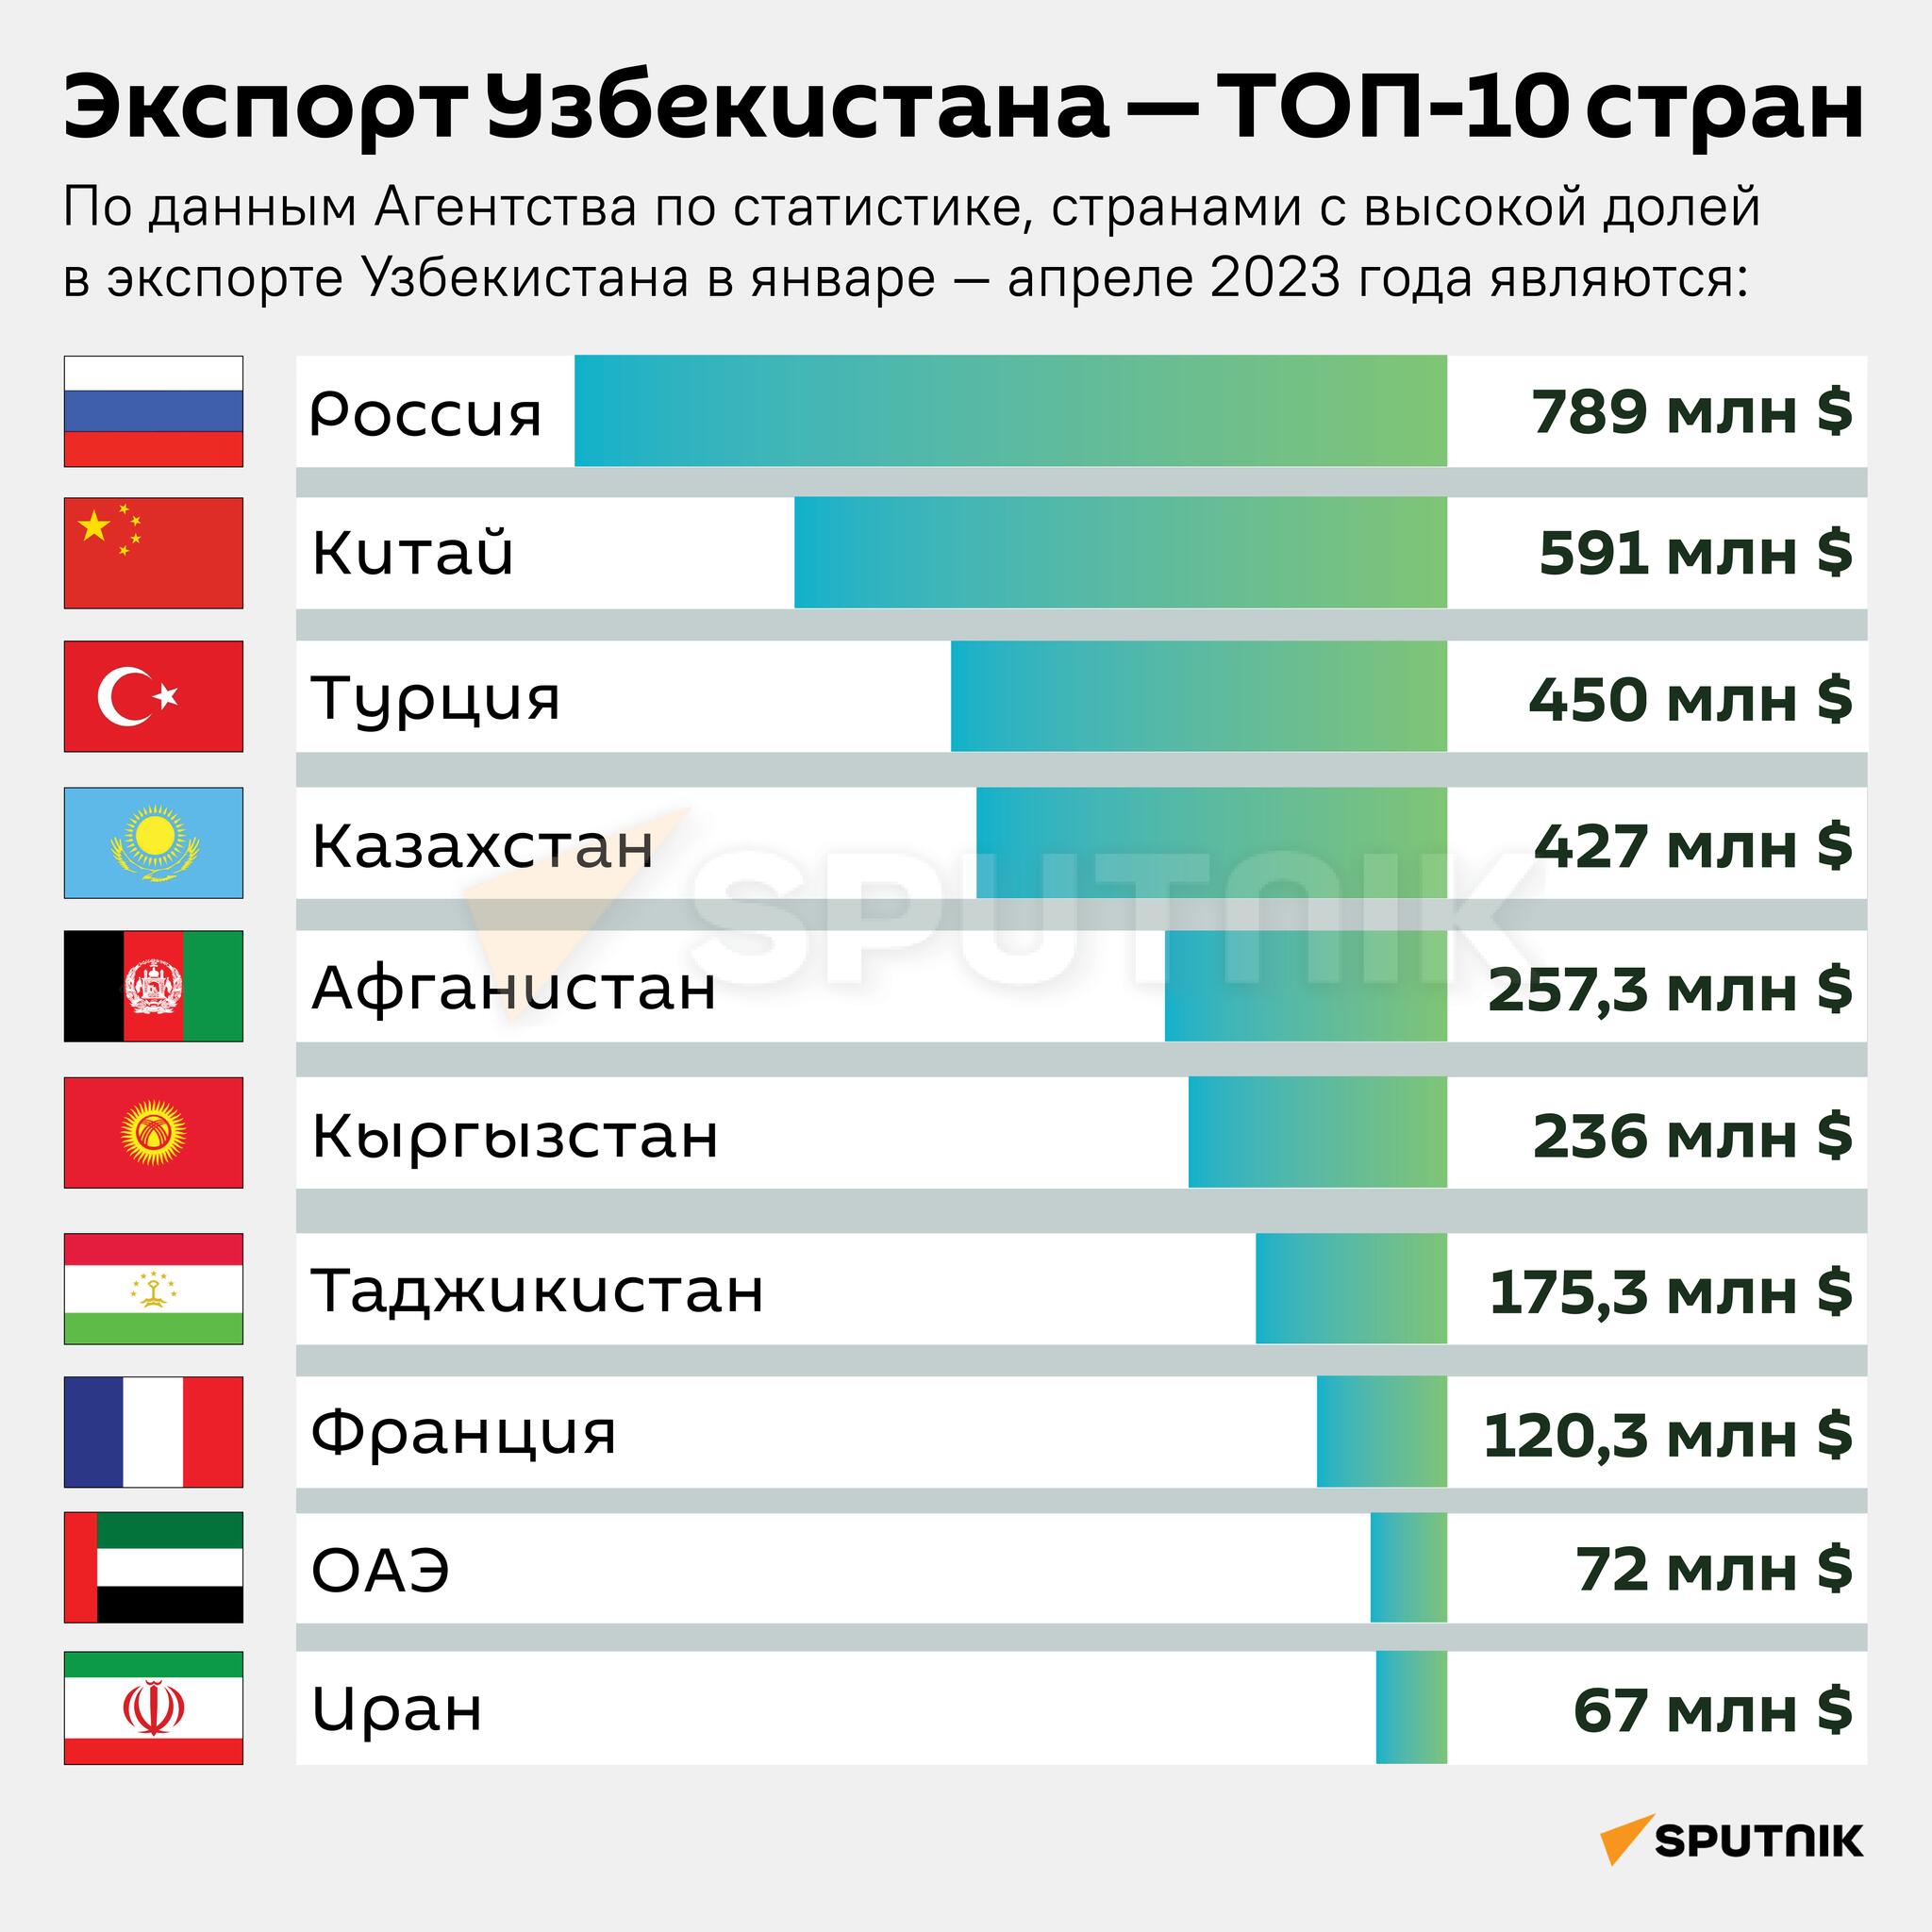 Экспорт Узбекистана - ТОП-10 стран за январь-апрель 2023 года инфографика. - Sputnik Узбекистан